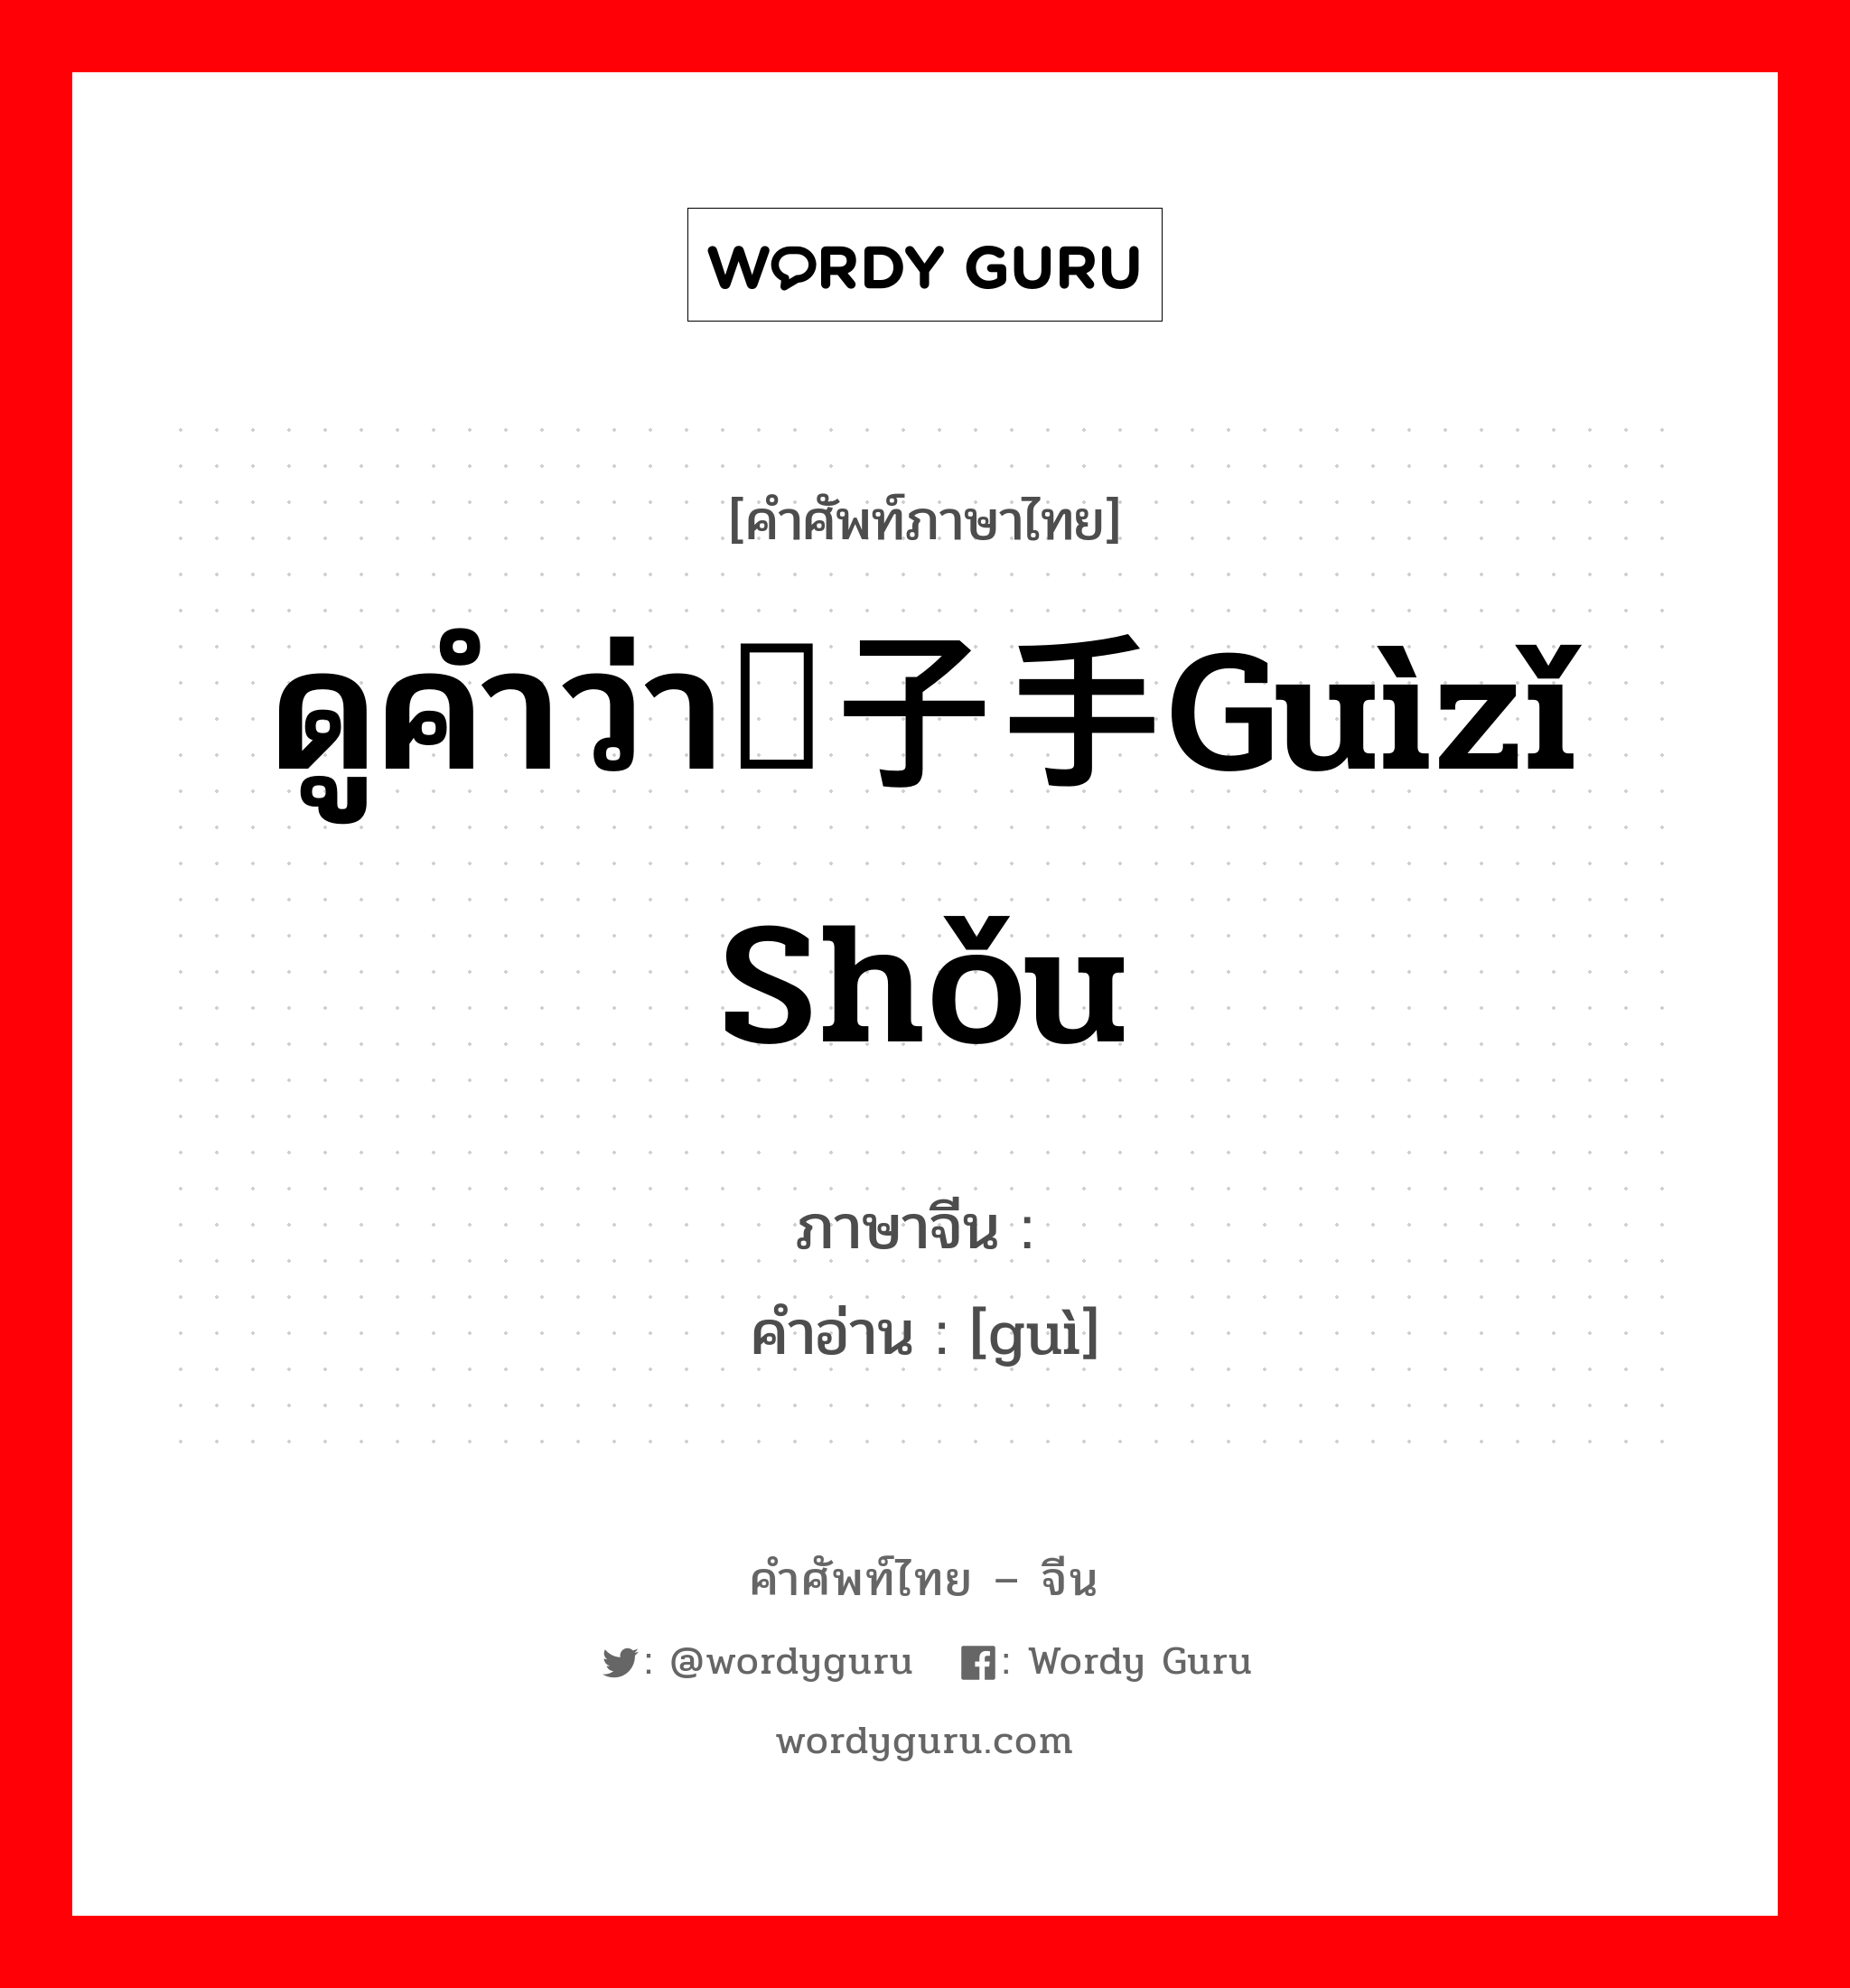 ดูคำว่า刽子手guìzǐ shǒu ภาษาจีนคืออะไร, คำศัพท์ภาษาไทย - จีน ดูคำว่า刽子手guìzǐ shǒu ภาษาจีน 刽 คำอ่าน [guì]